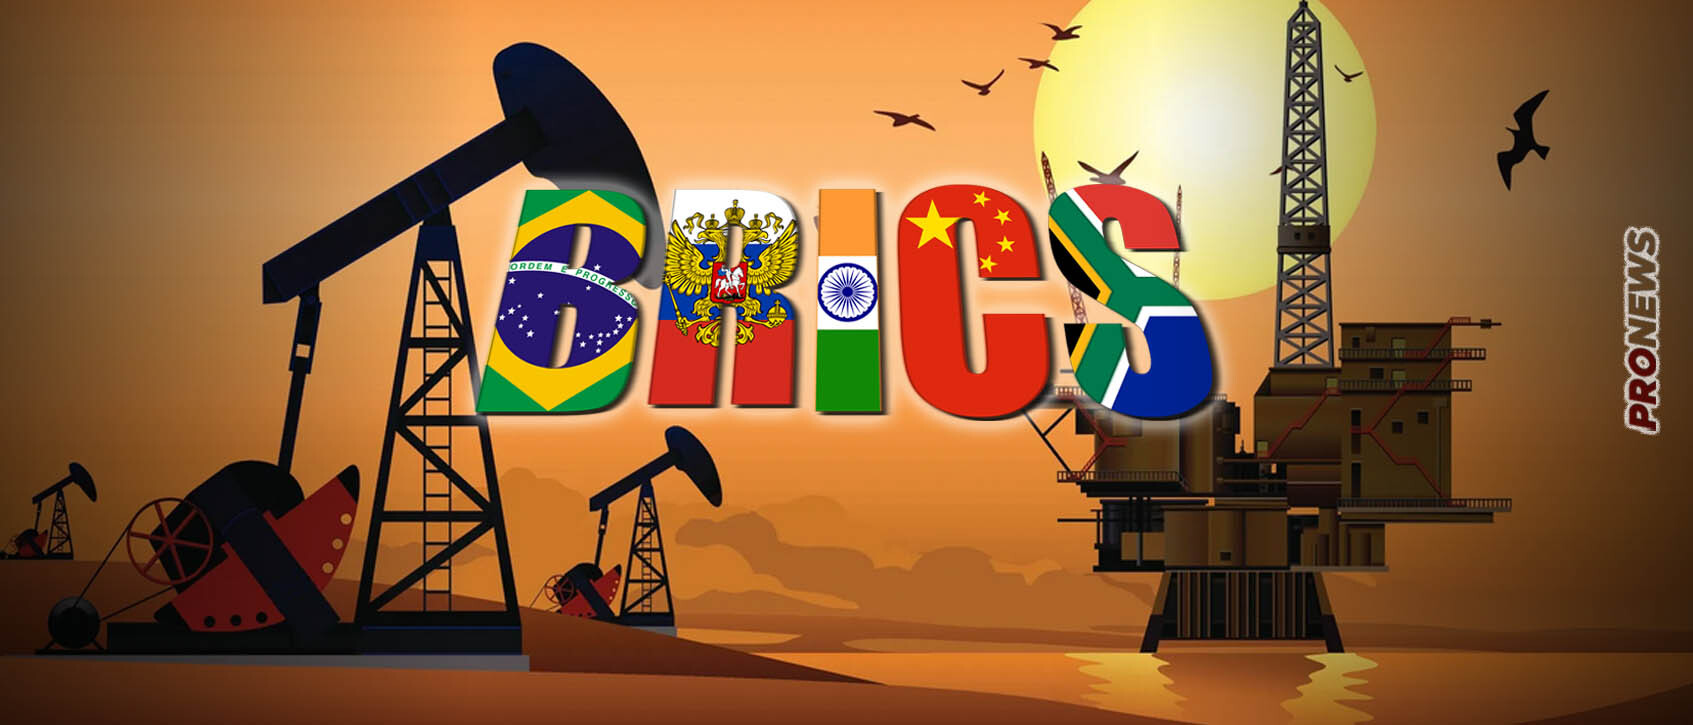 Αλλάζουν οι ισορροπίες: Οι BRICS γίνονται ηγέτιδα δύναμη στην παραγωγή πετρελαίου – Ποιες είναι οι νέες 6 χώρες που εντάσσονται